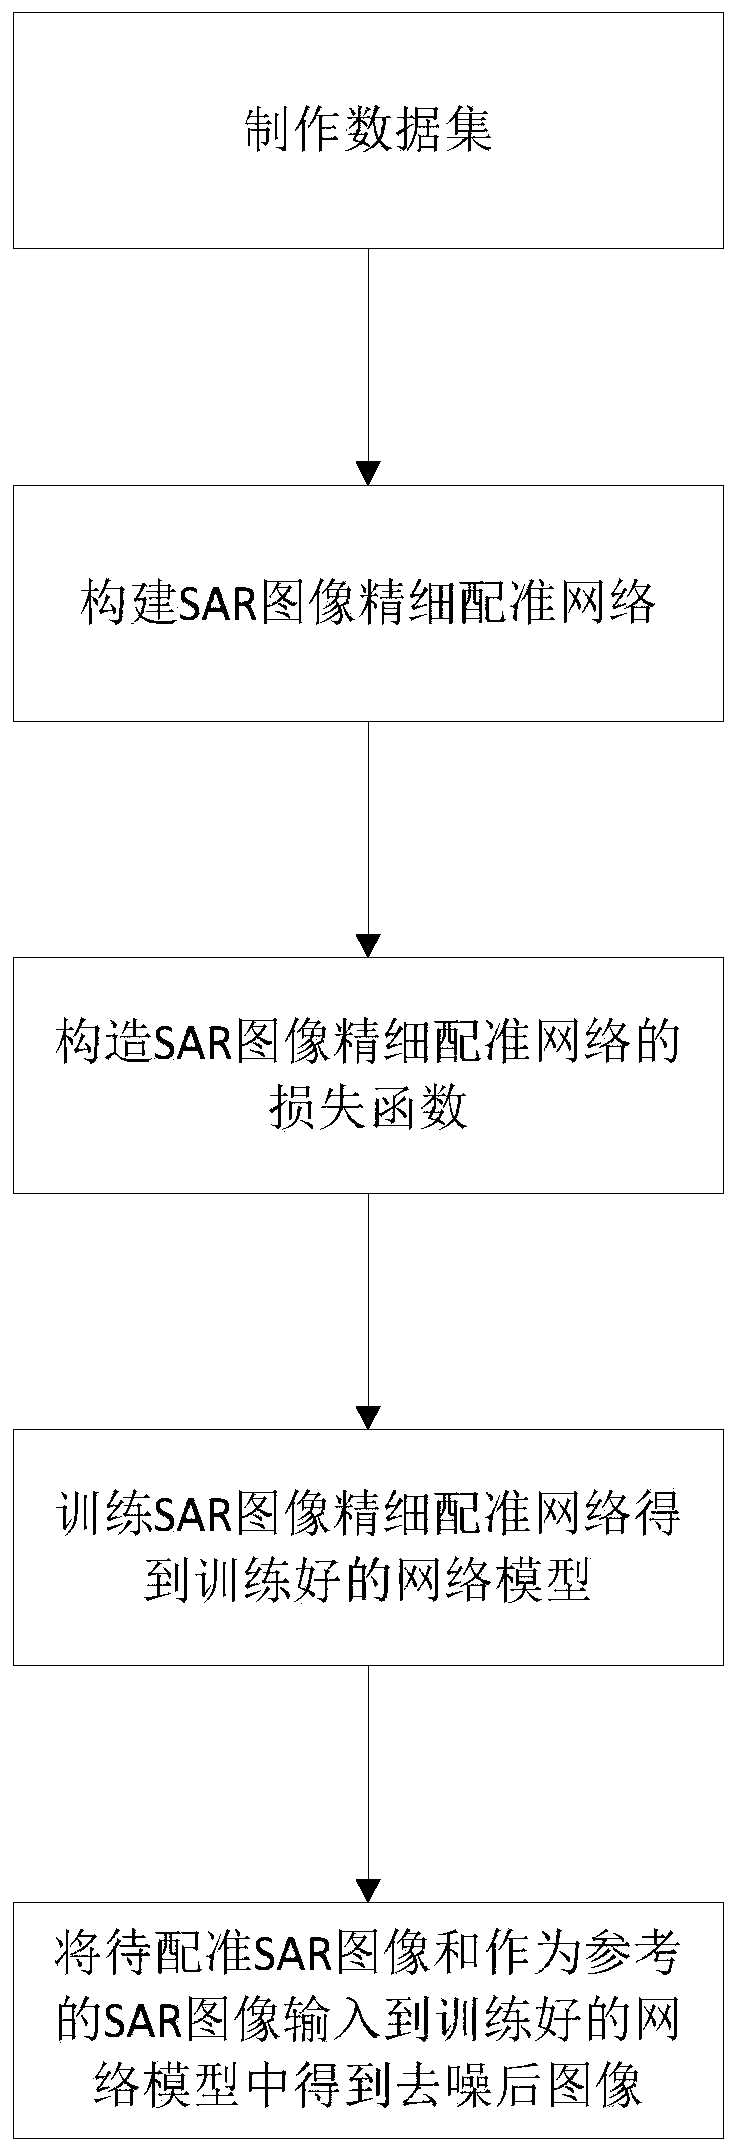 SAR image fine registration method based on deep learning